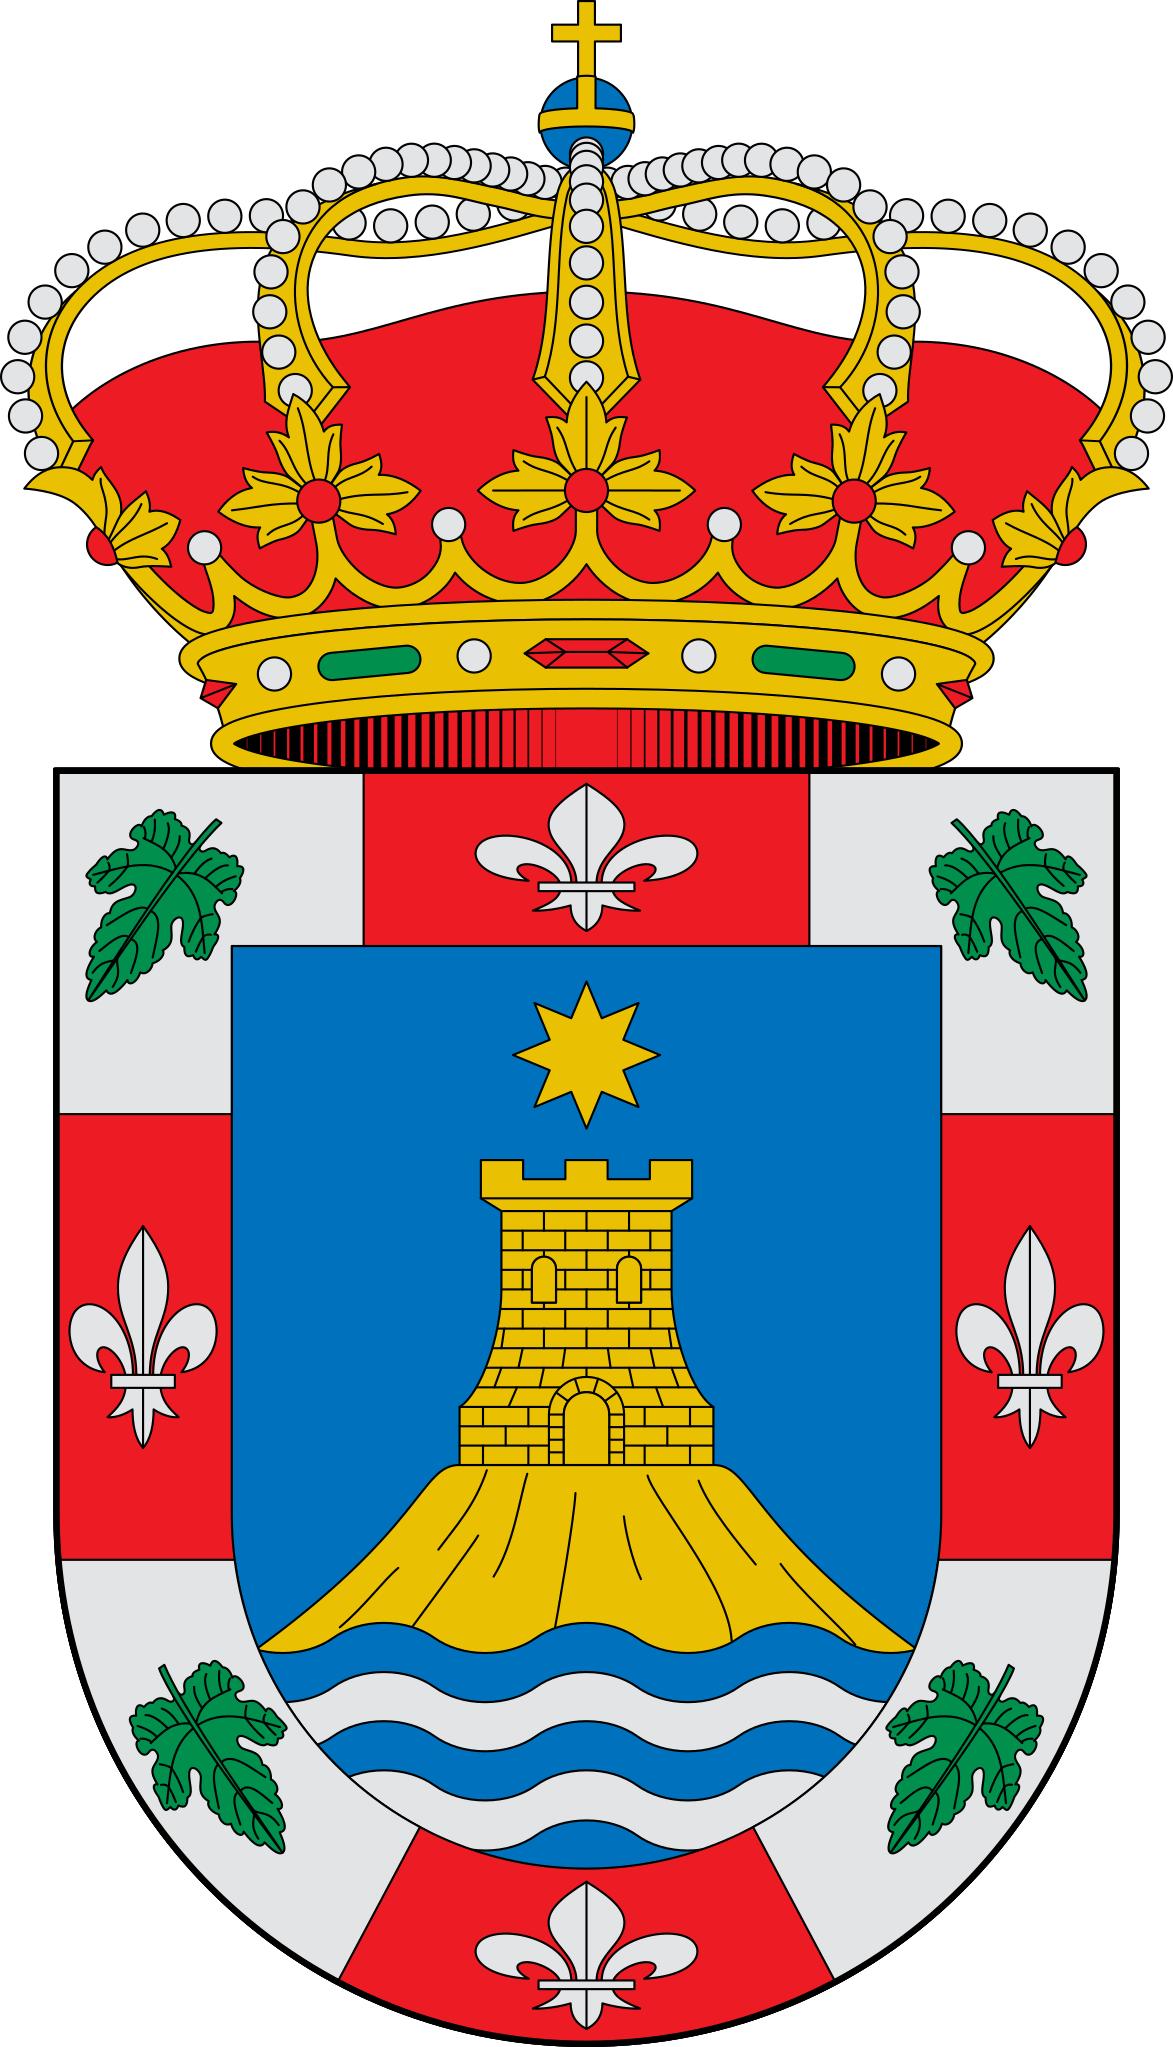 Escudo_de_Corullón_(León).svg